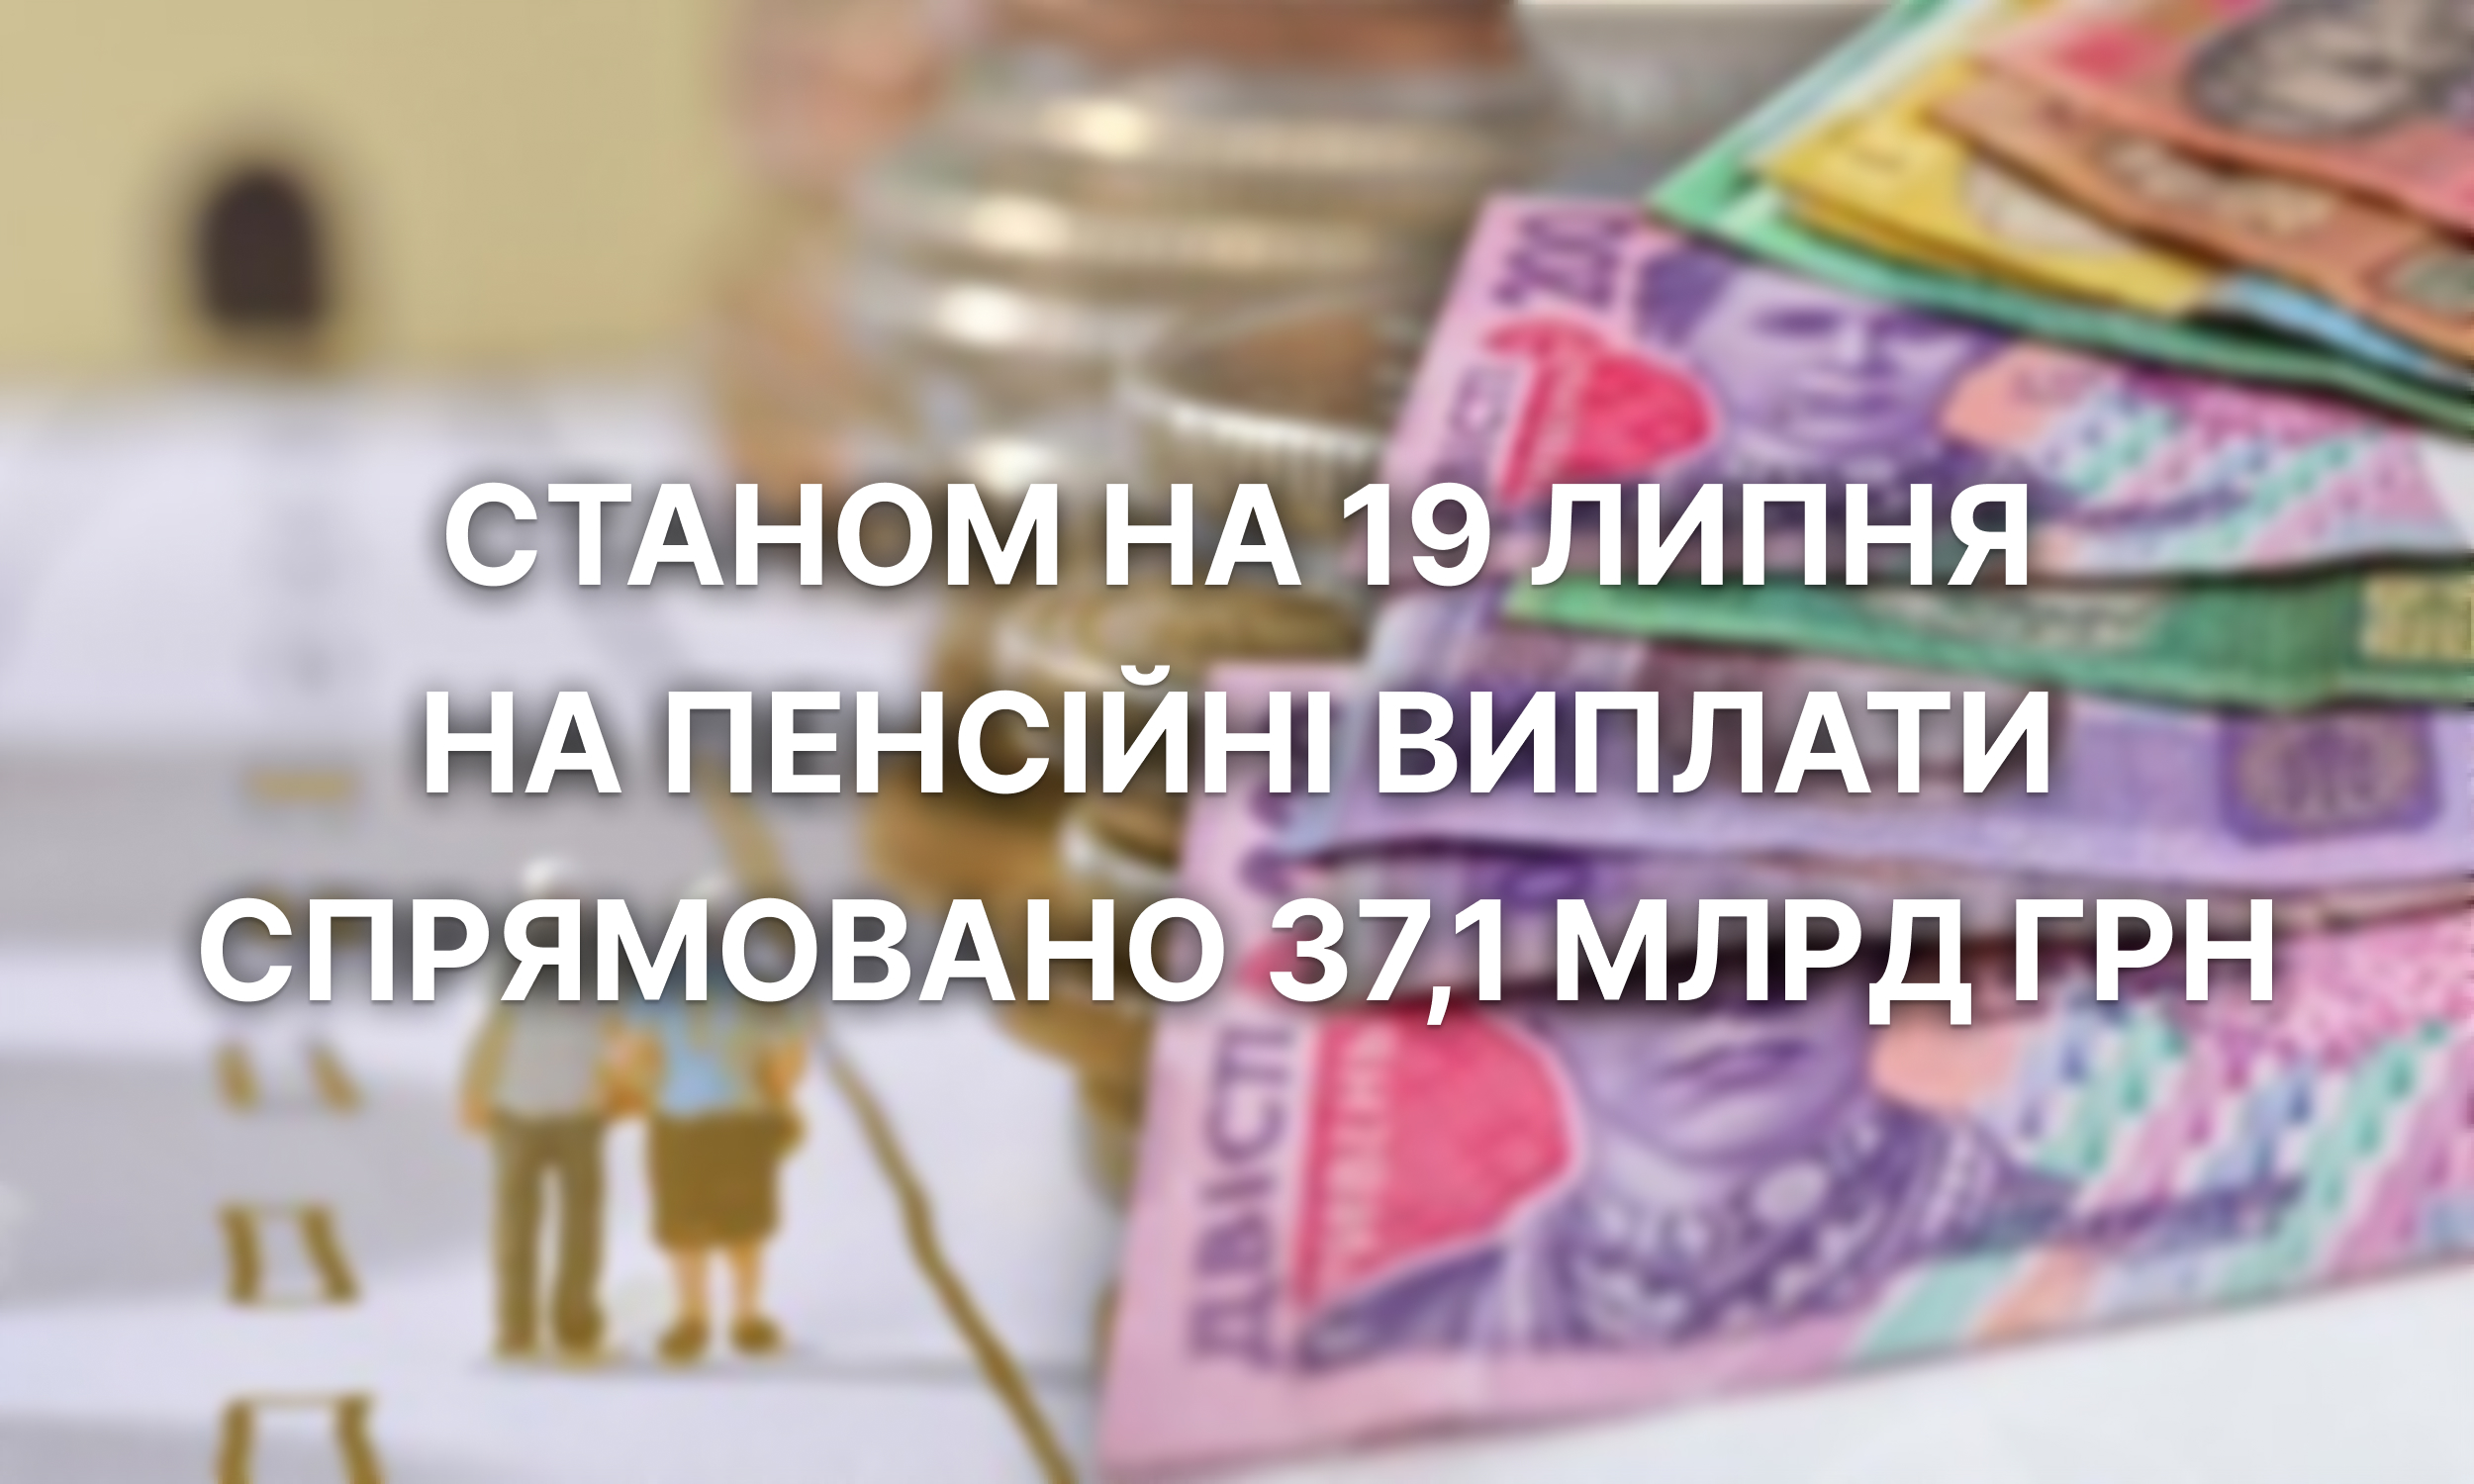 Станом на 19 липня на пенсійні виплати спрямовано 371 млрд грн